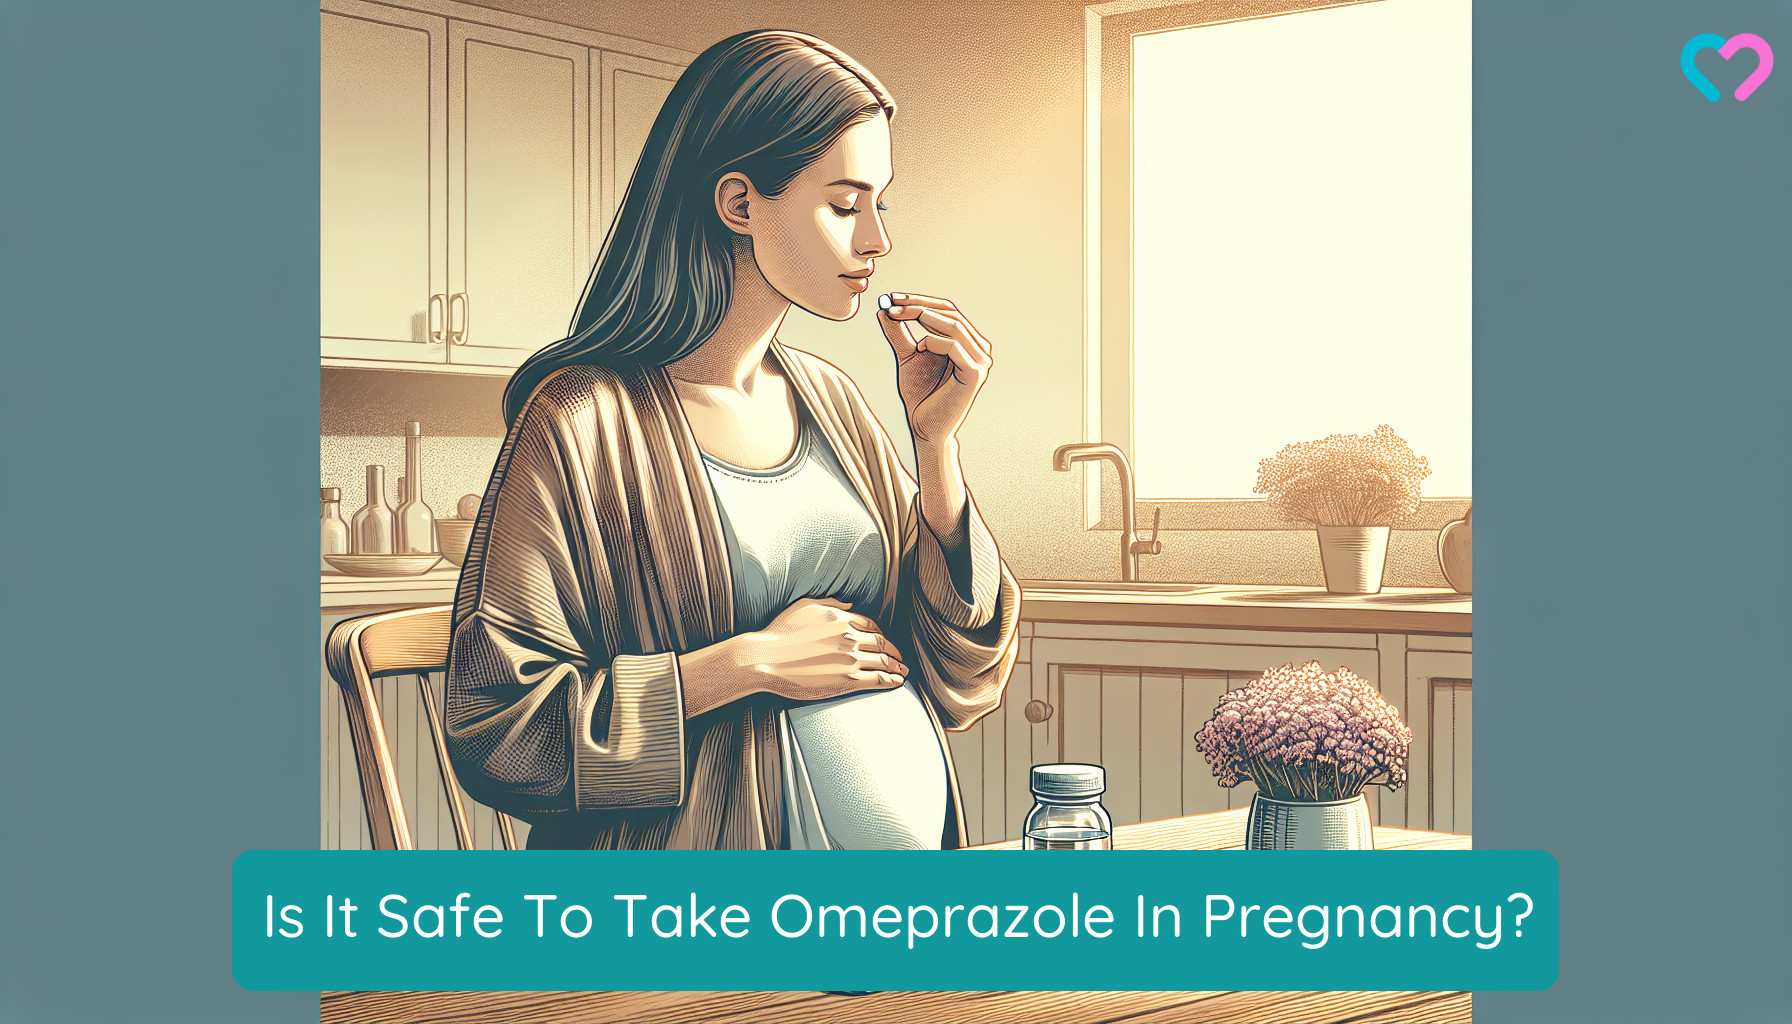 omeprazole in pregnancy_illustration